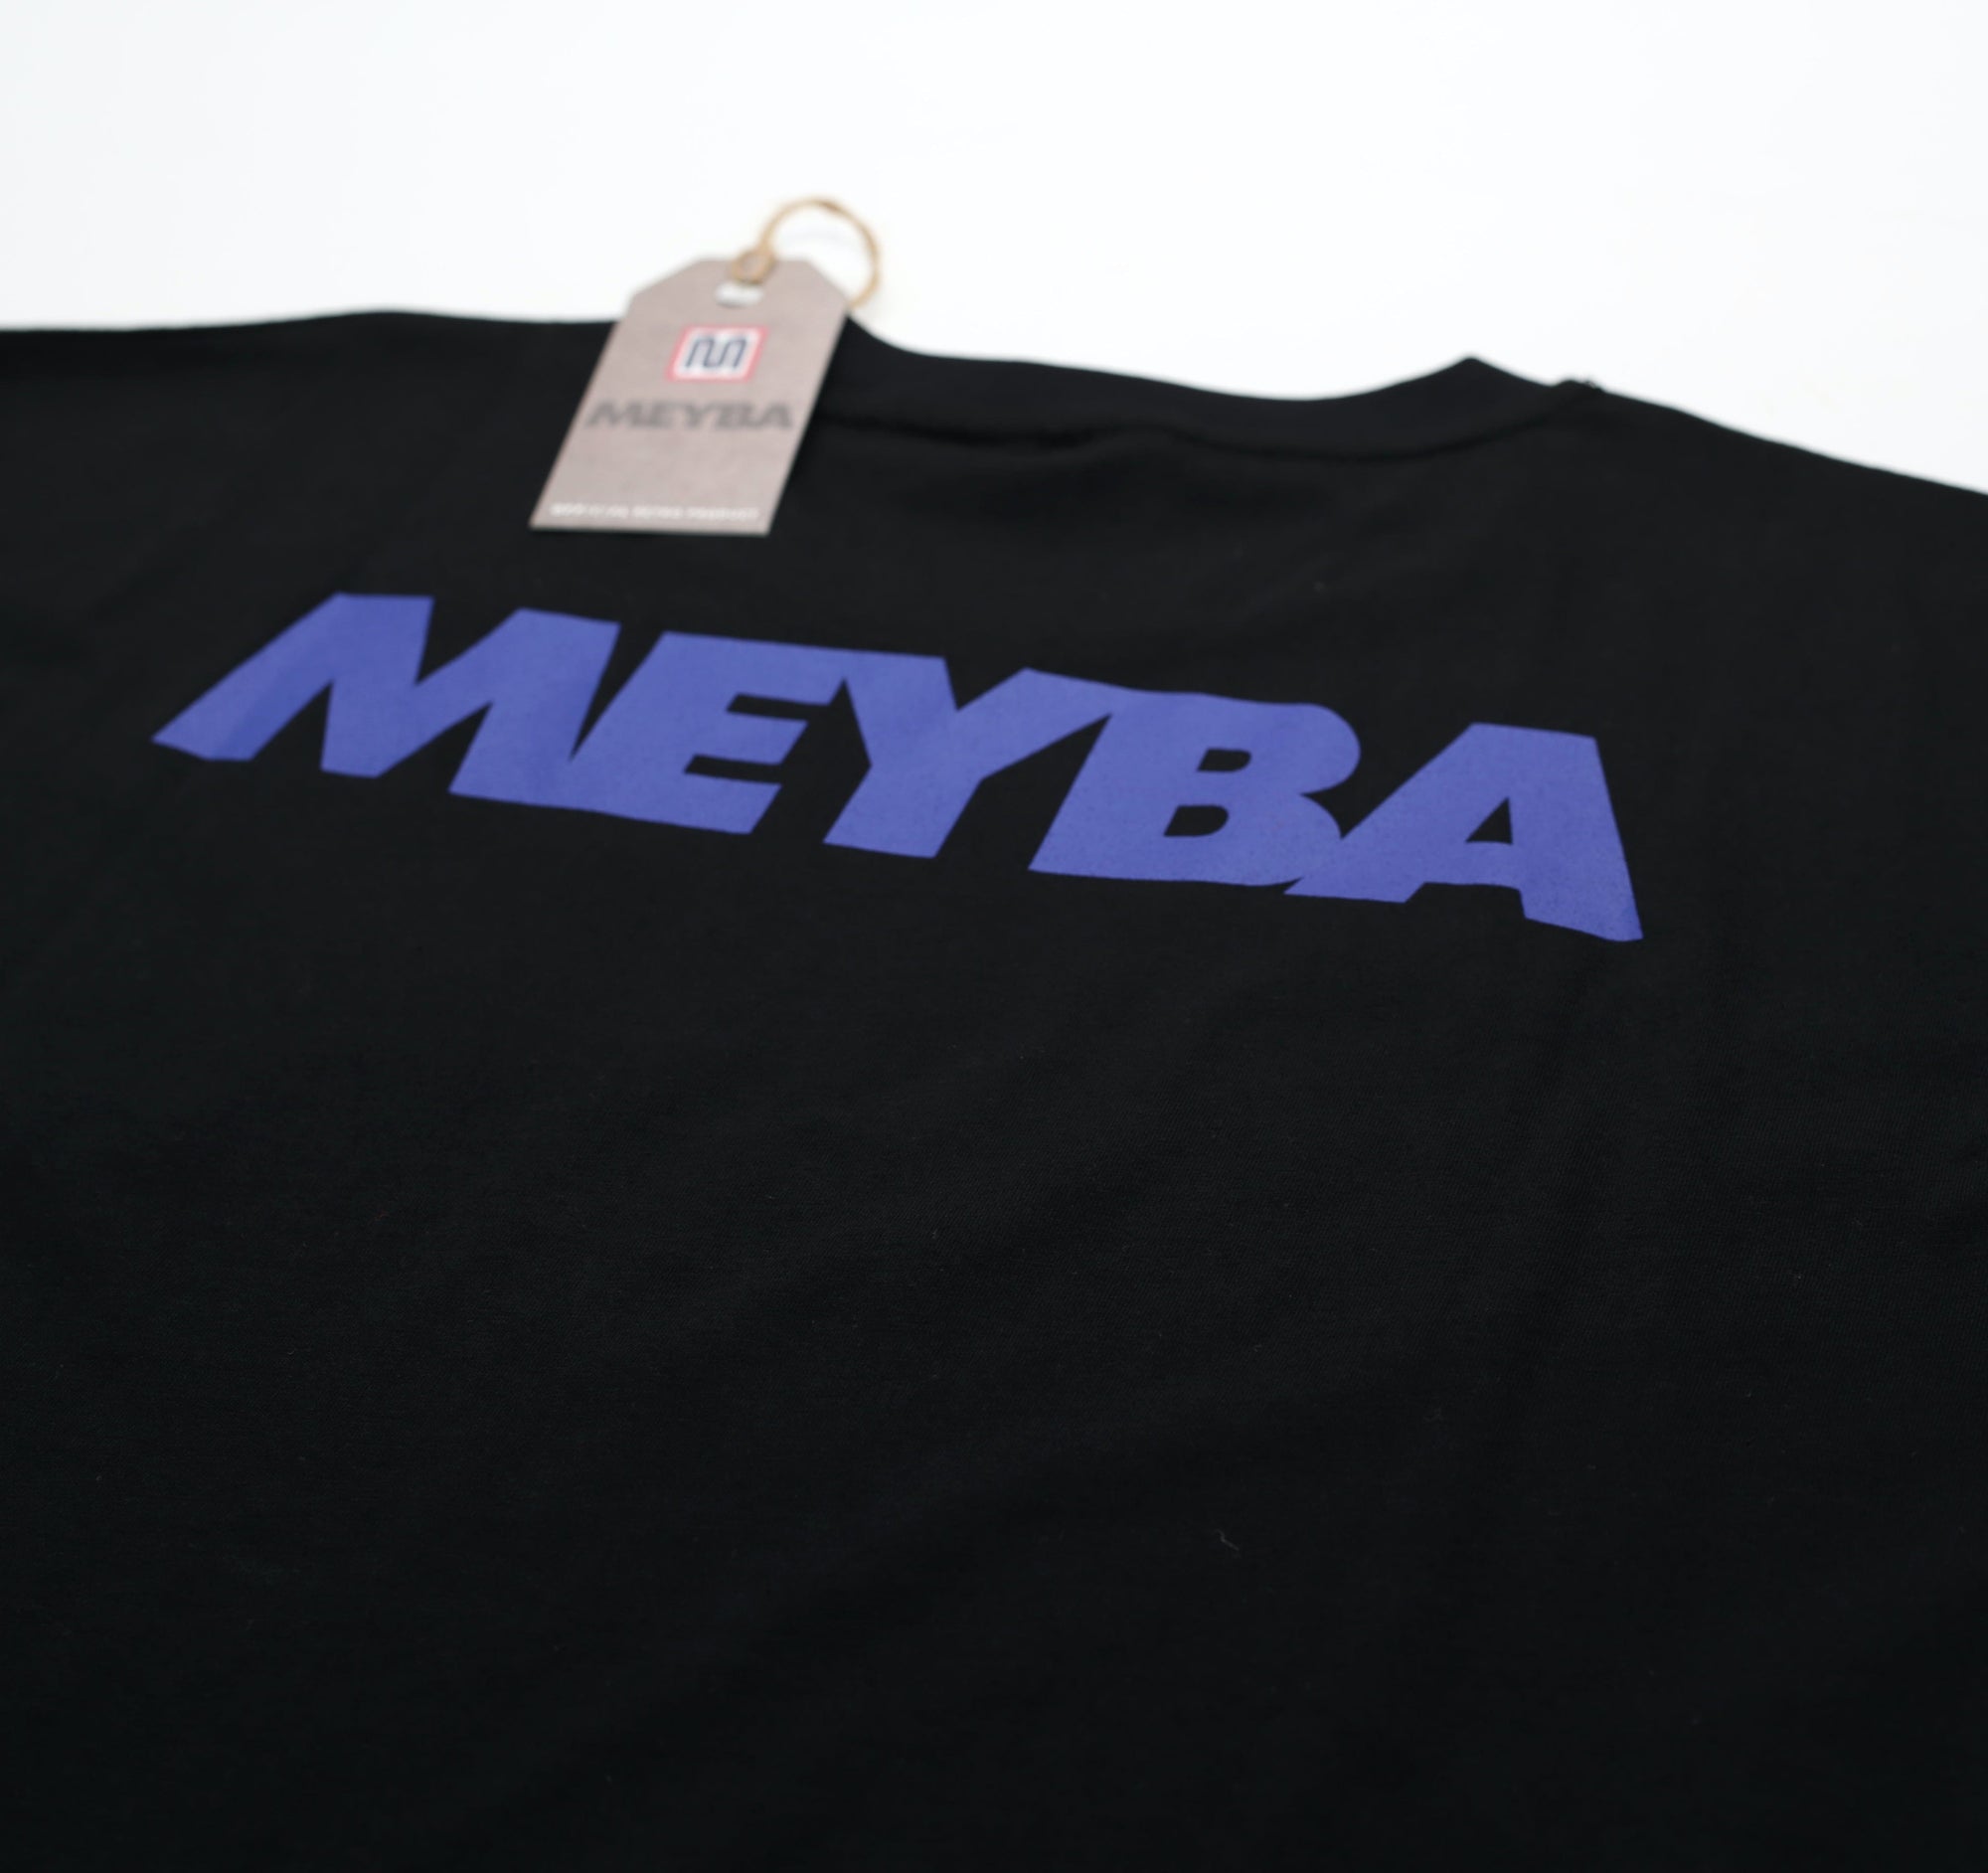 Meyba Tee Shirt